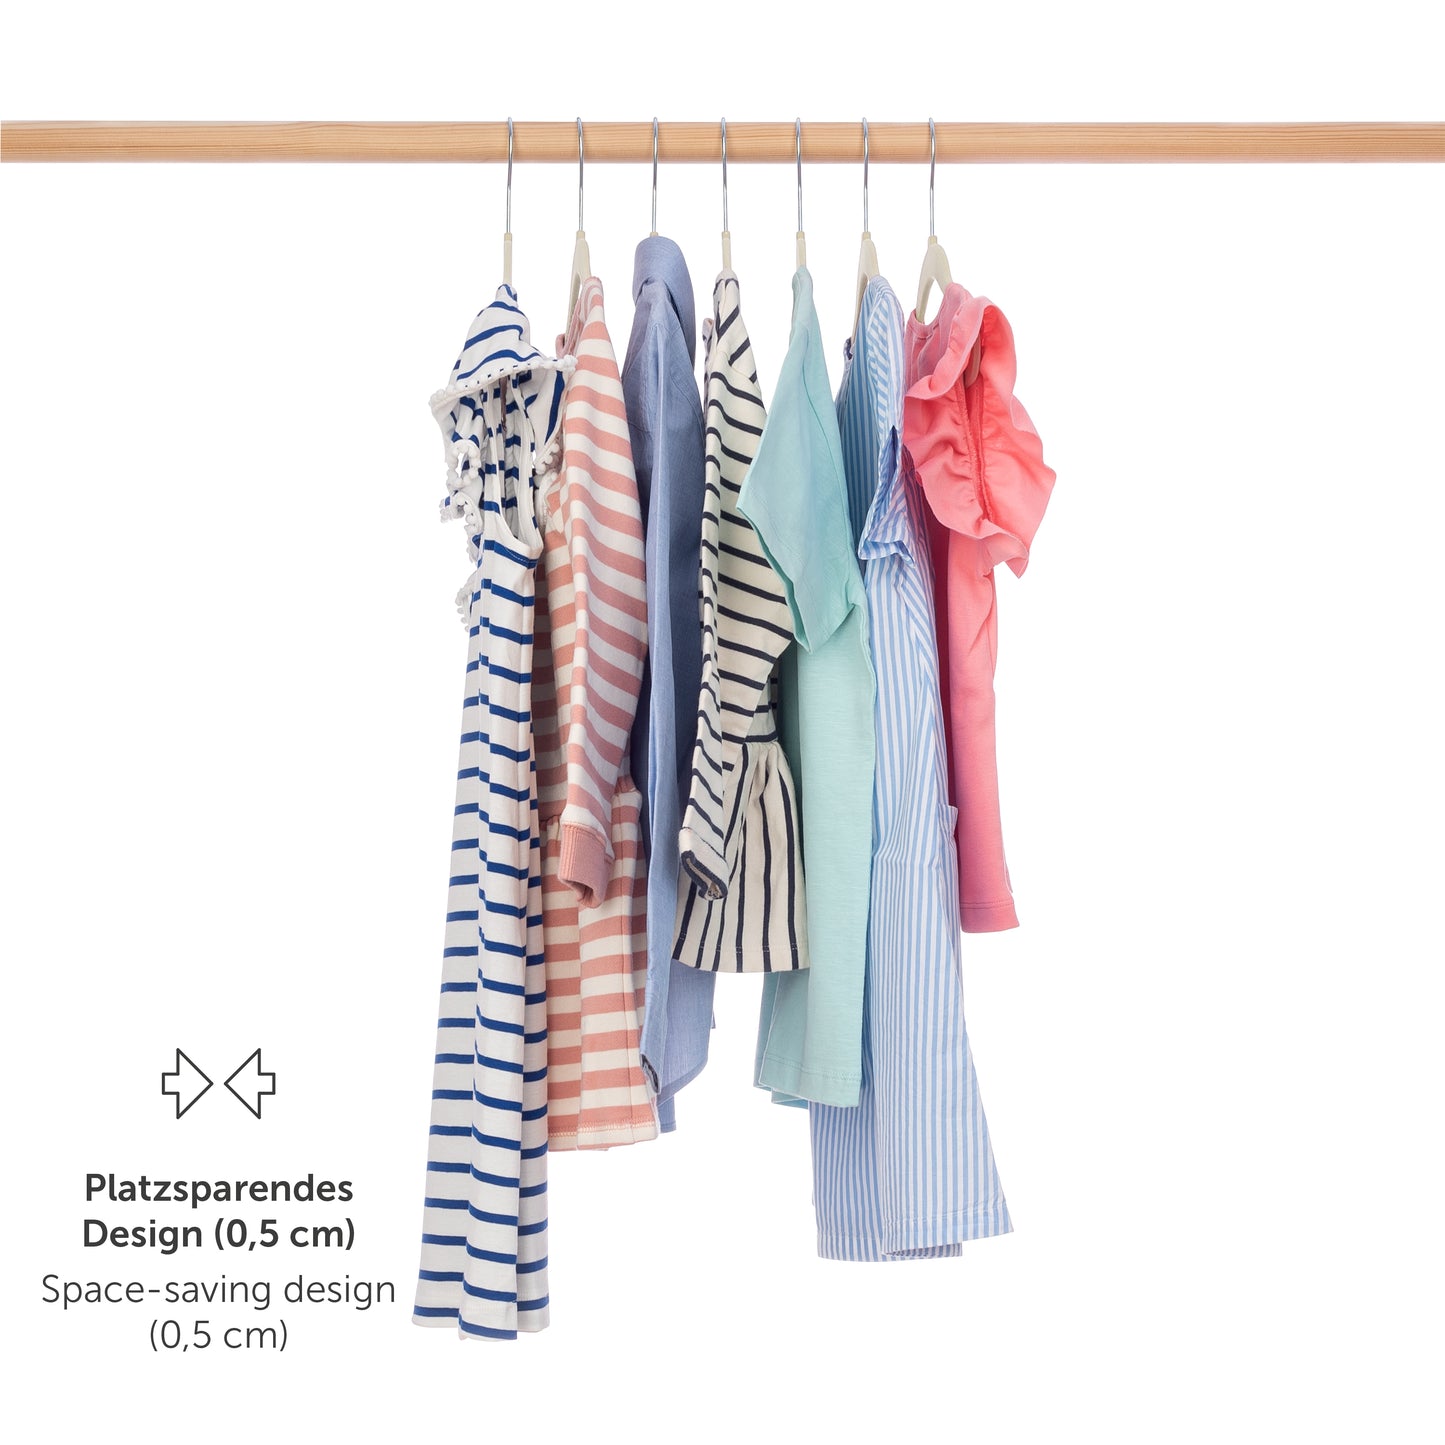 Verschieden gemusterte Kinderkleider auf elfenbein Kleiderbügeln an einer Stange hängend mit Hinweis auf platzsparendes Design